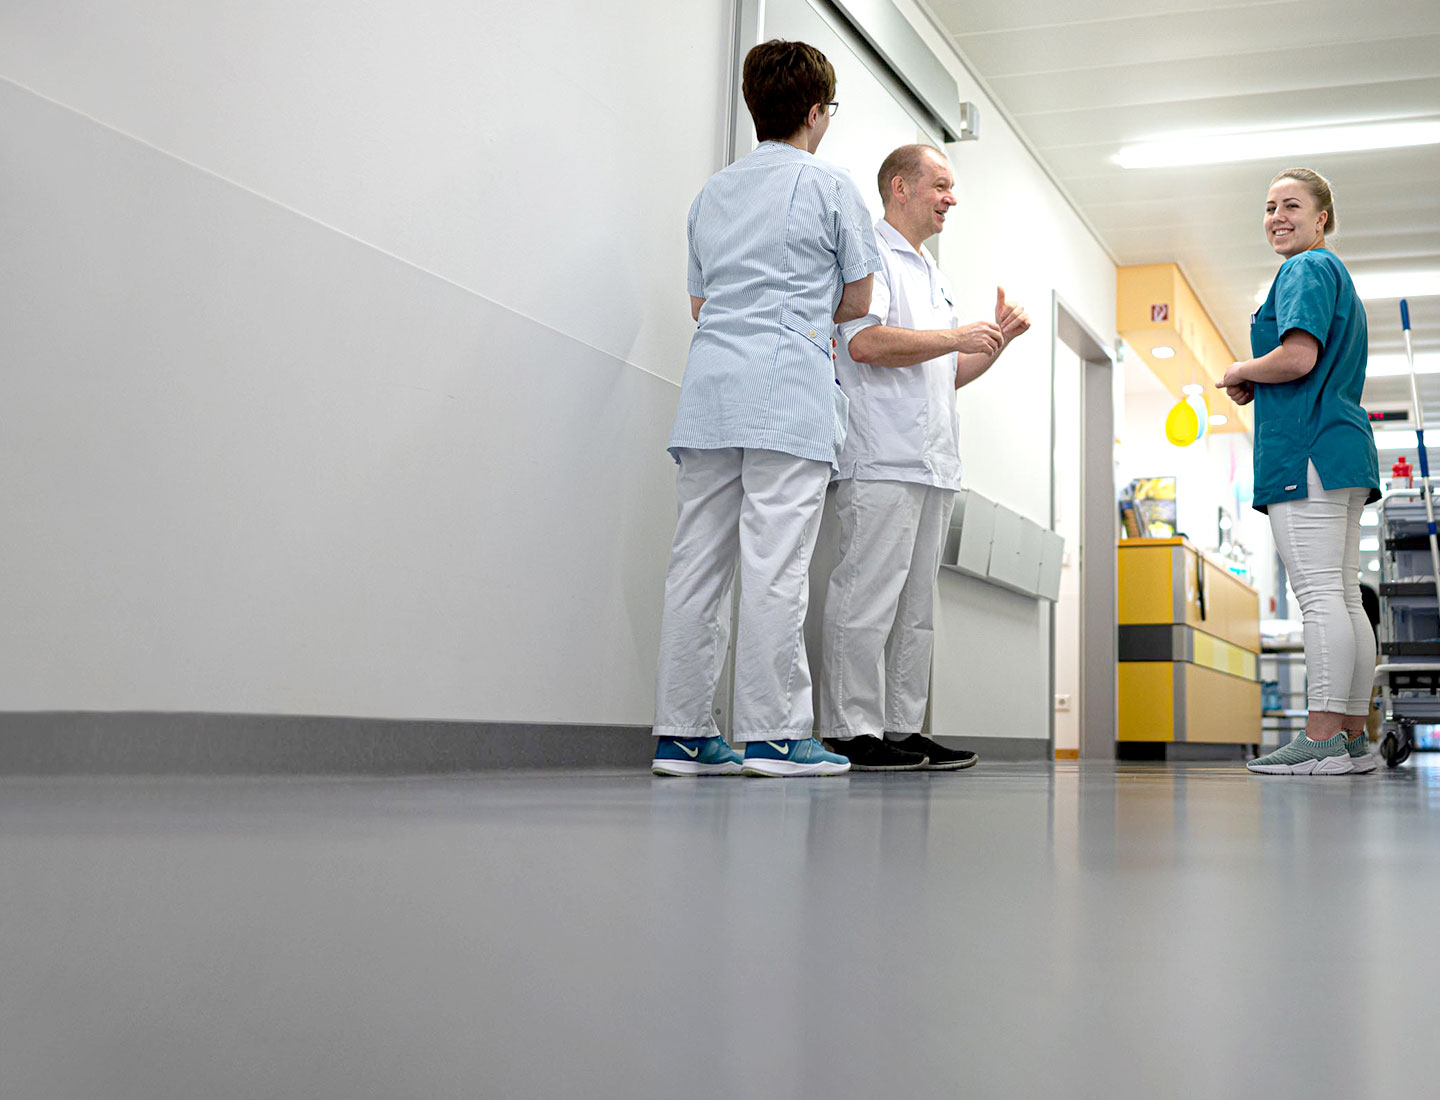 Nurses chatting in hospital hallway